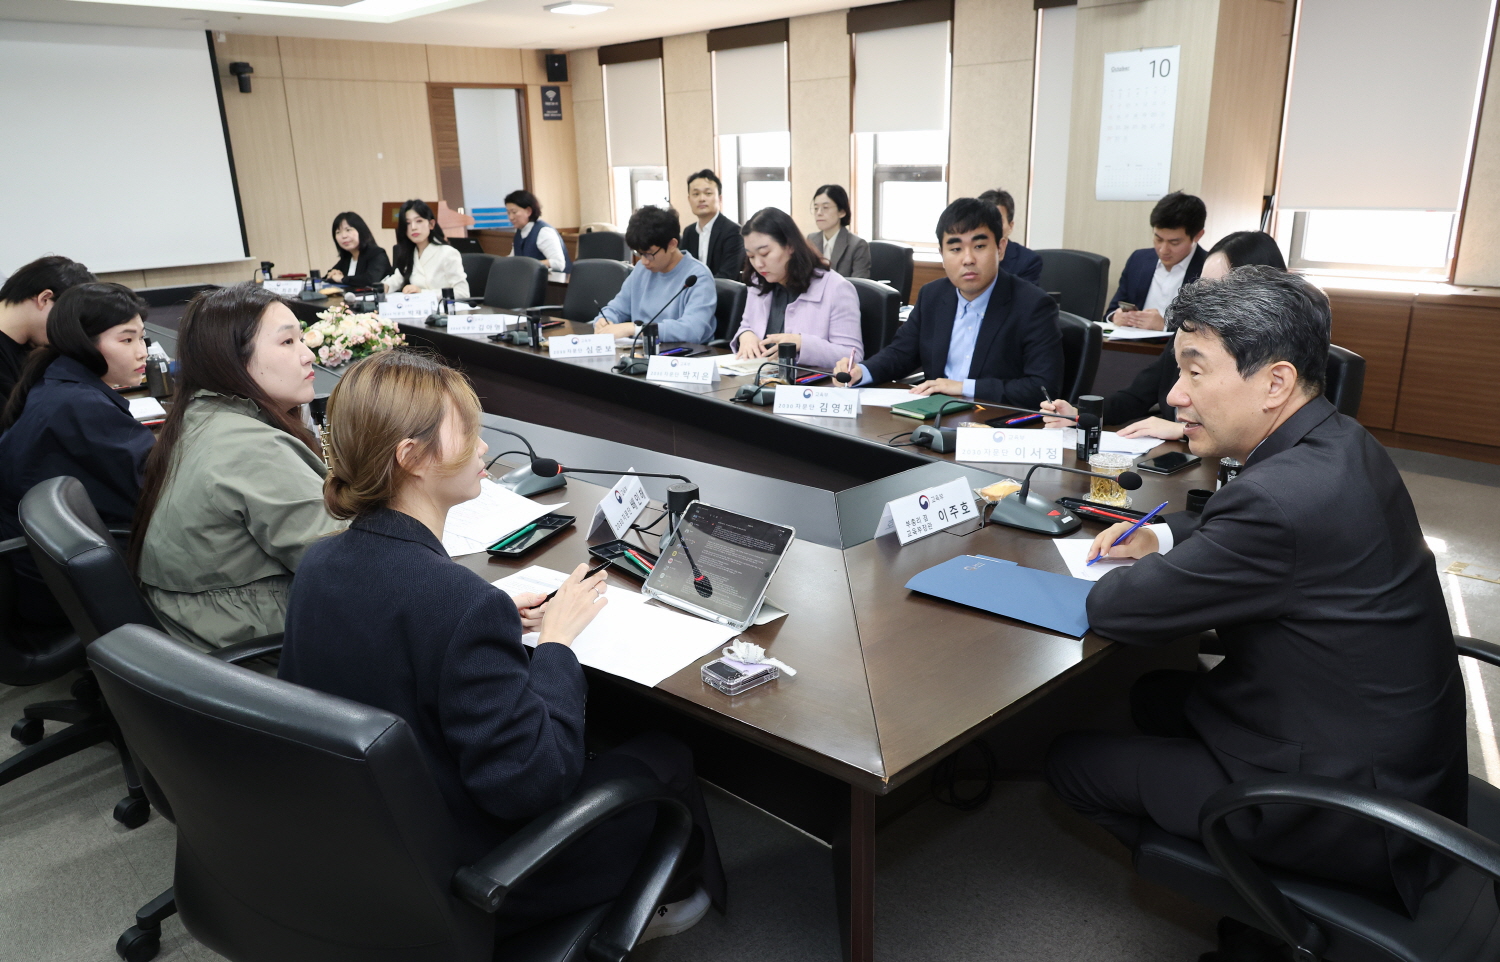 이주호 부총리 겸 교육부장관은 10월 31일(화), 한국교육시설안전원에서 ‘2030 자문단 체인져스(CHANGERS)’가 제안한 10대 제안 과제에 대해 논의했다.